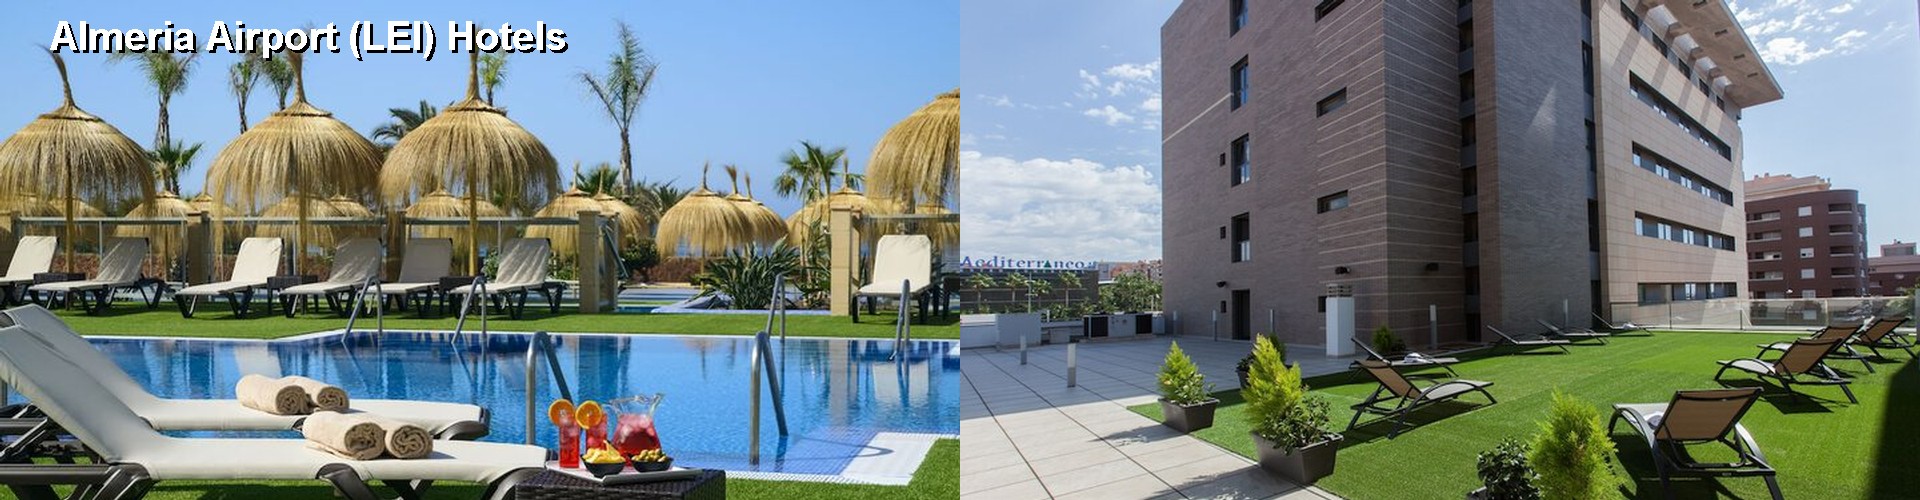 5 Best Hotels near Almeria Airport (LEI)